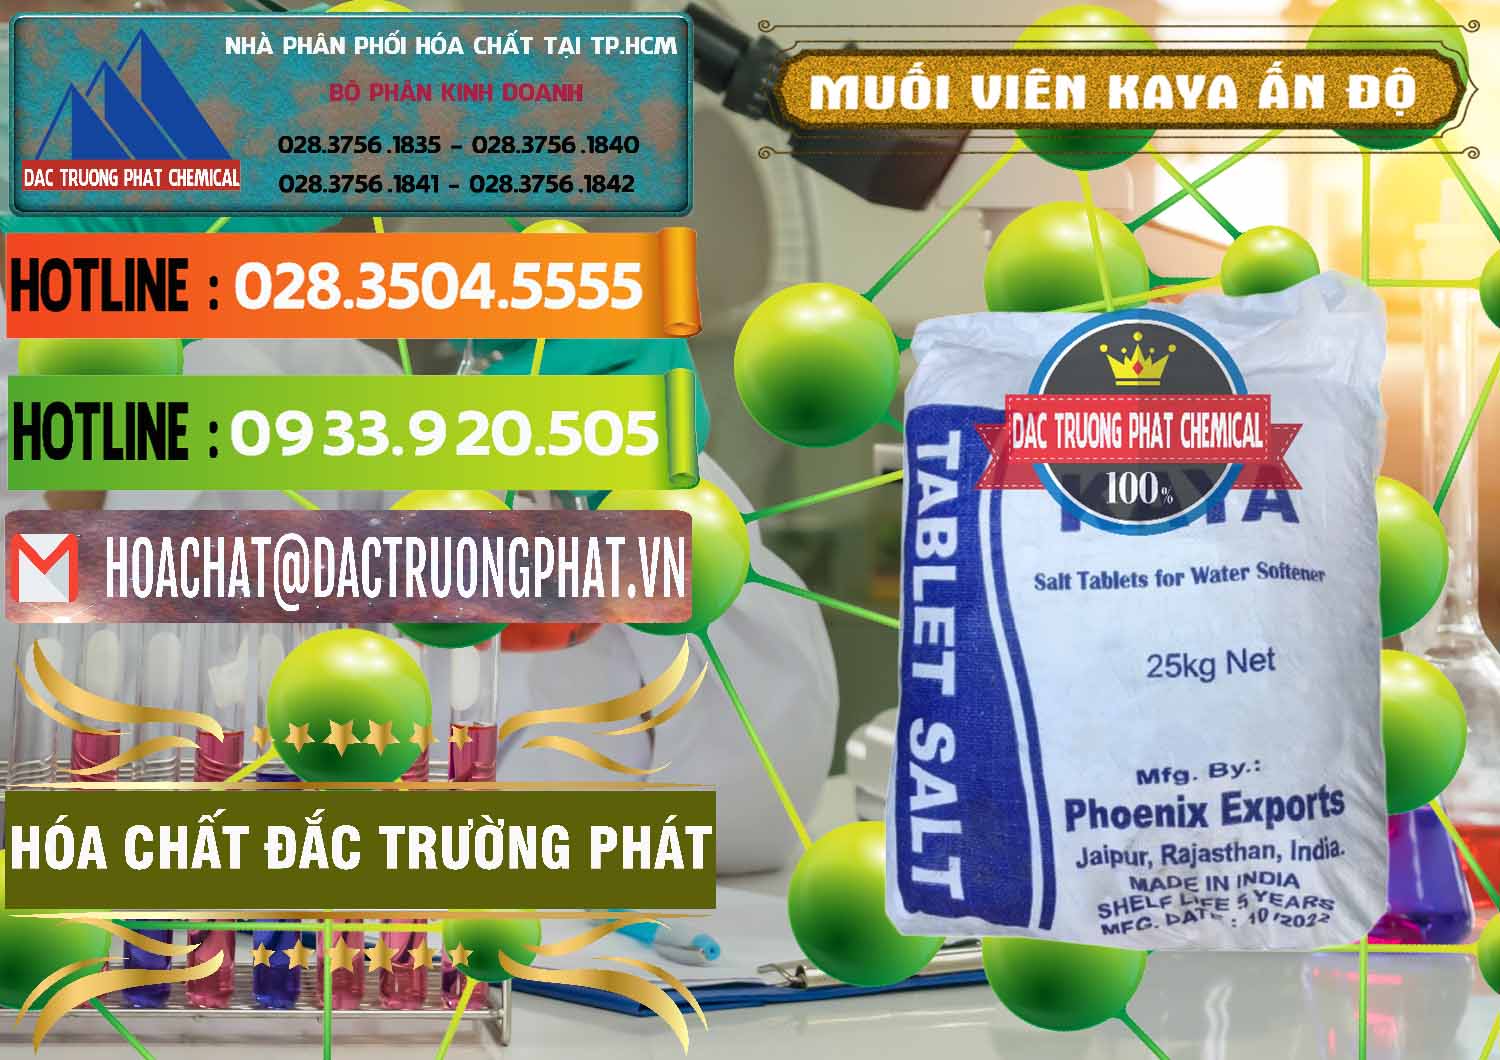 Nơi kinh doanh ( bán ) Muối NaCL – Sodium Chloride Dạng Viên Tablets Kaya Ấn Độ India - 0368 - Đơn vị chuyên bán ( cung cấp ) hóa chất tại TP.HCM - cungcaphoachat.com.vn